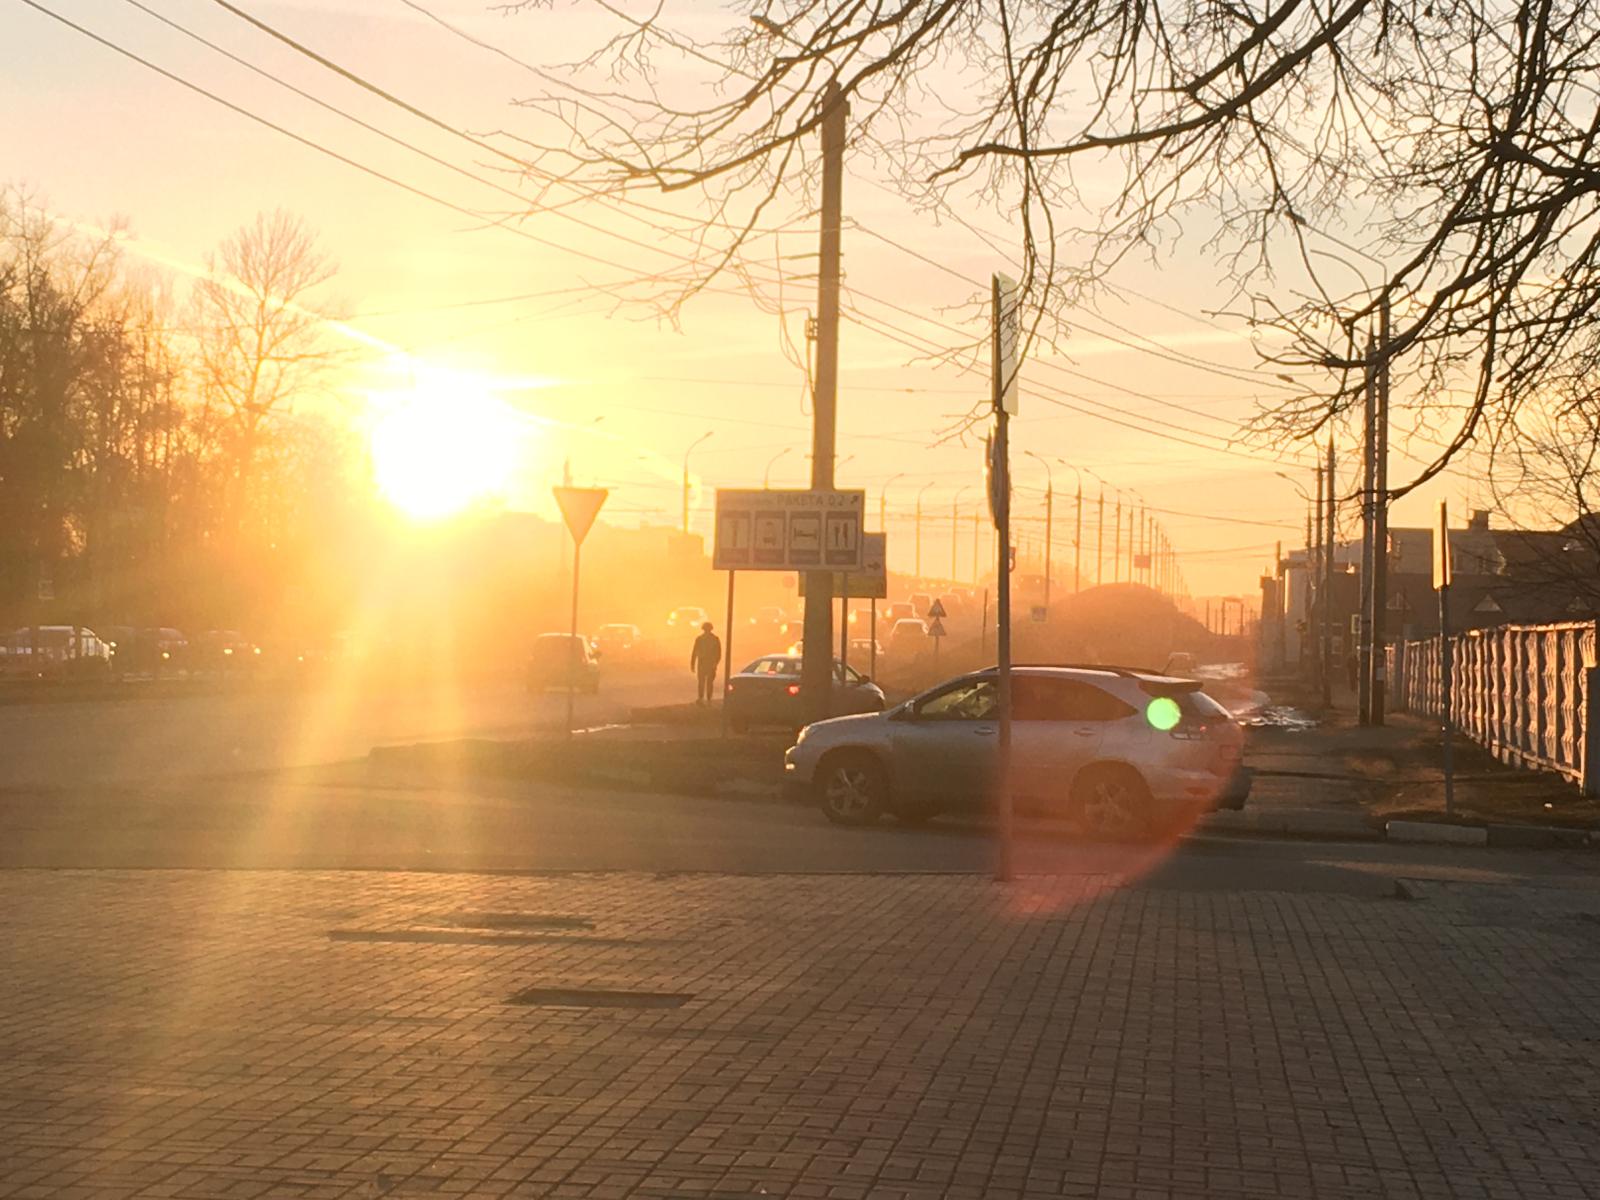 Брянск занял пятое место в топе регионов России по самому чистому воздуху